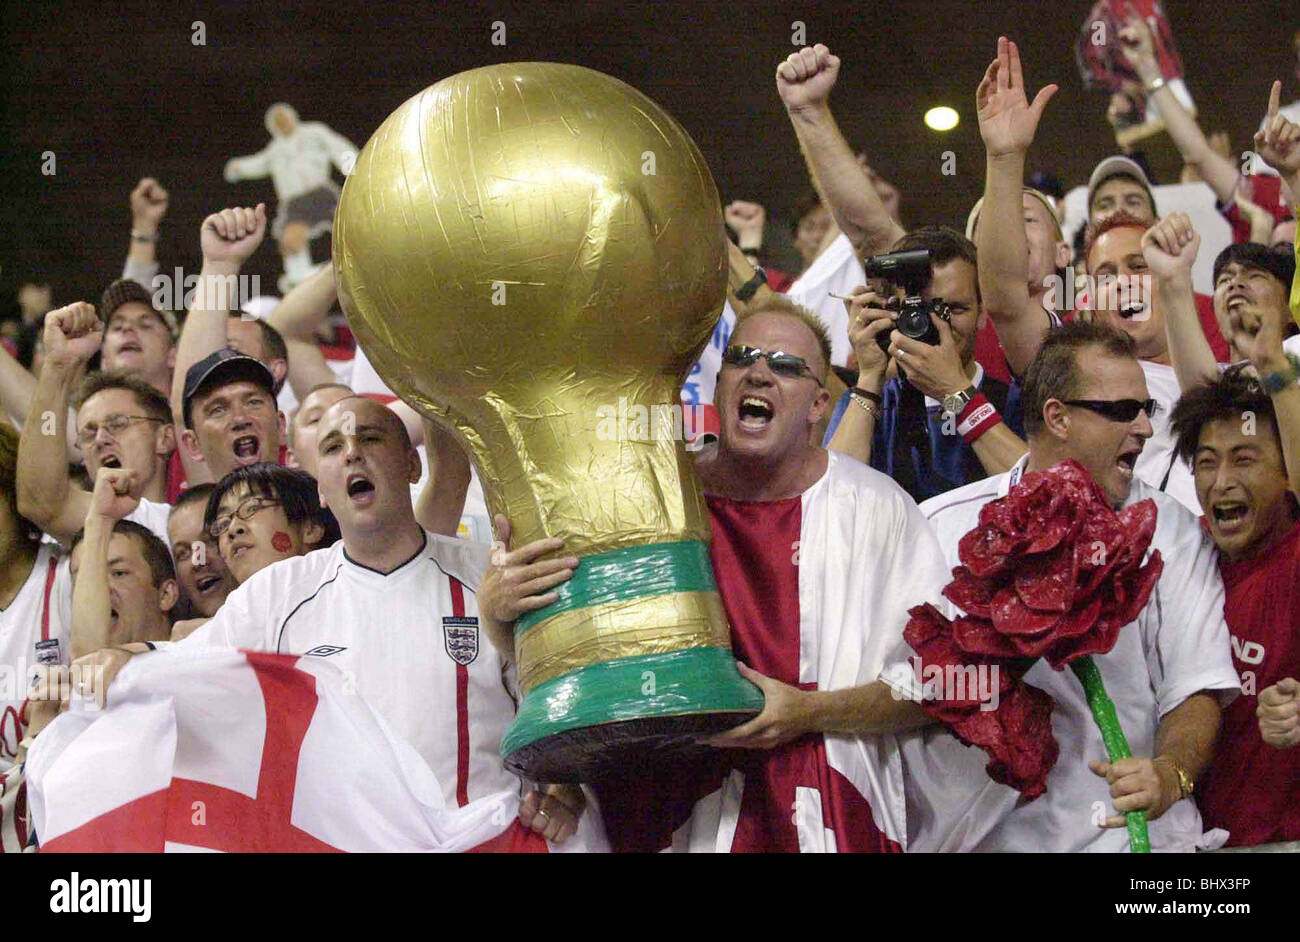 Coppa del Mondo di giugno 2002 secondo turno. Inghilterra sostenitori celebrare durante il loro match contro la Danimarca che in Inghilterra ha vinto 3-0 Foto Stock